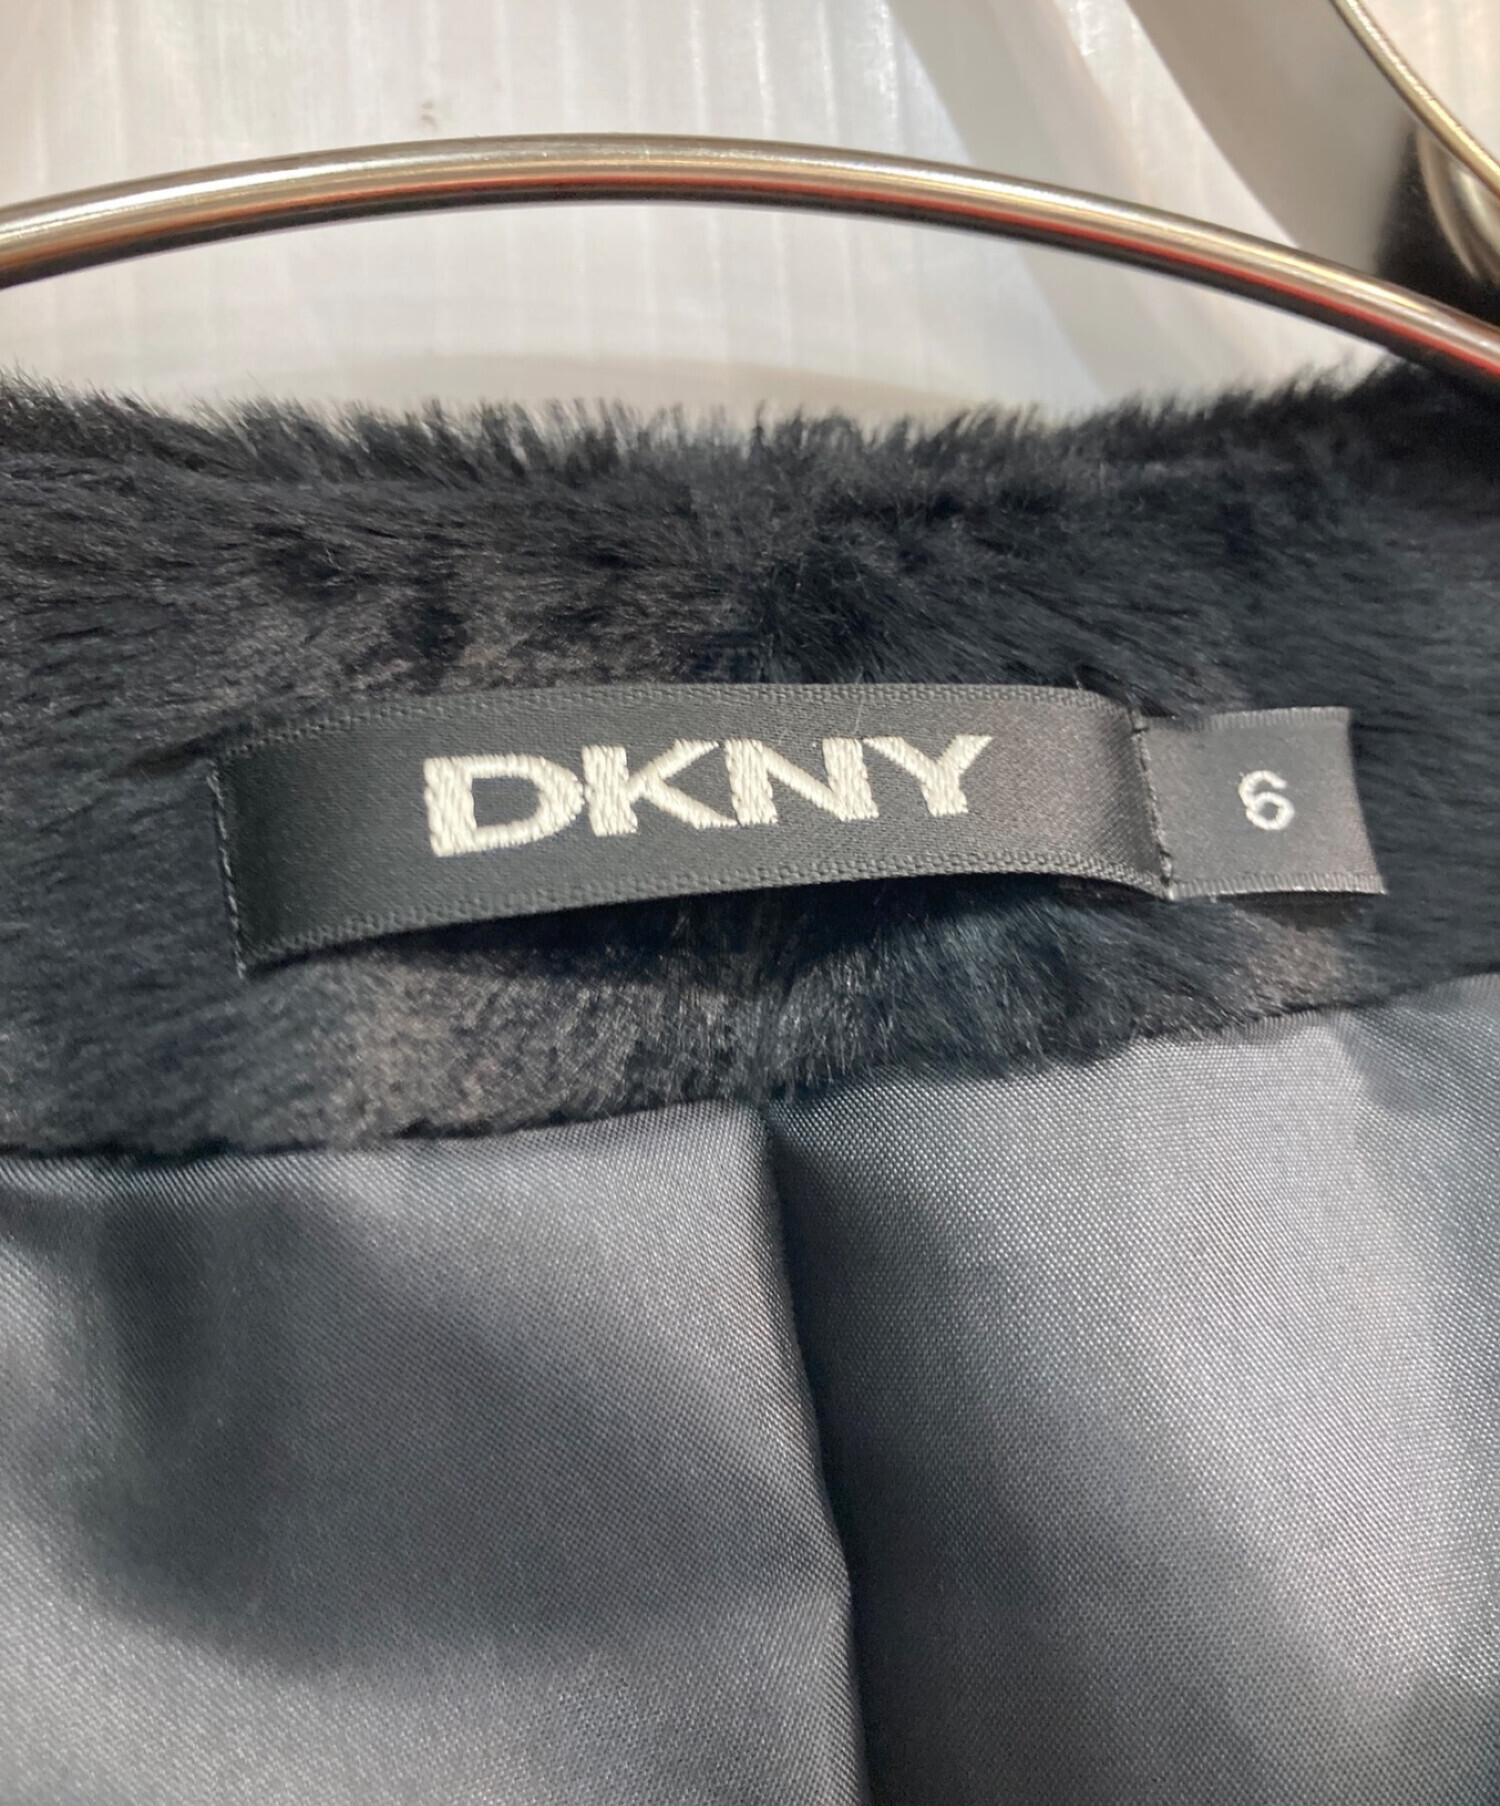 DKNY (ダナキャランニューヨーク) フェイクファーセットアップ ブラック サイズ:6